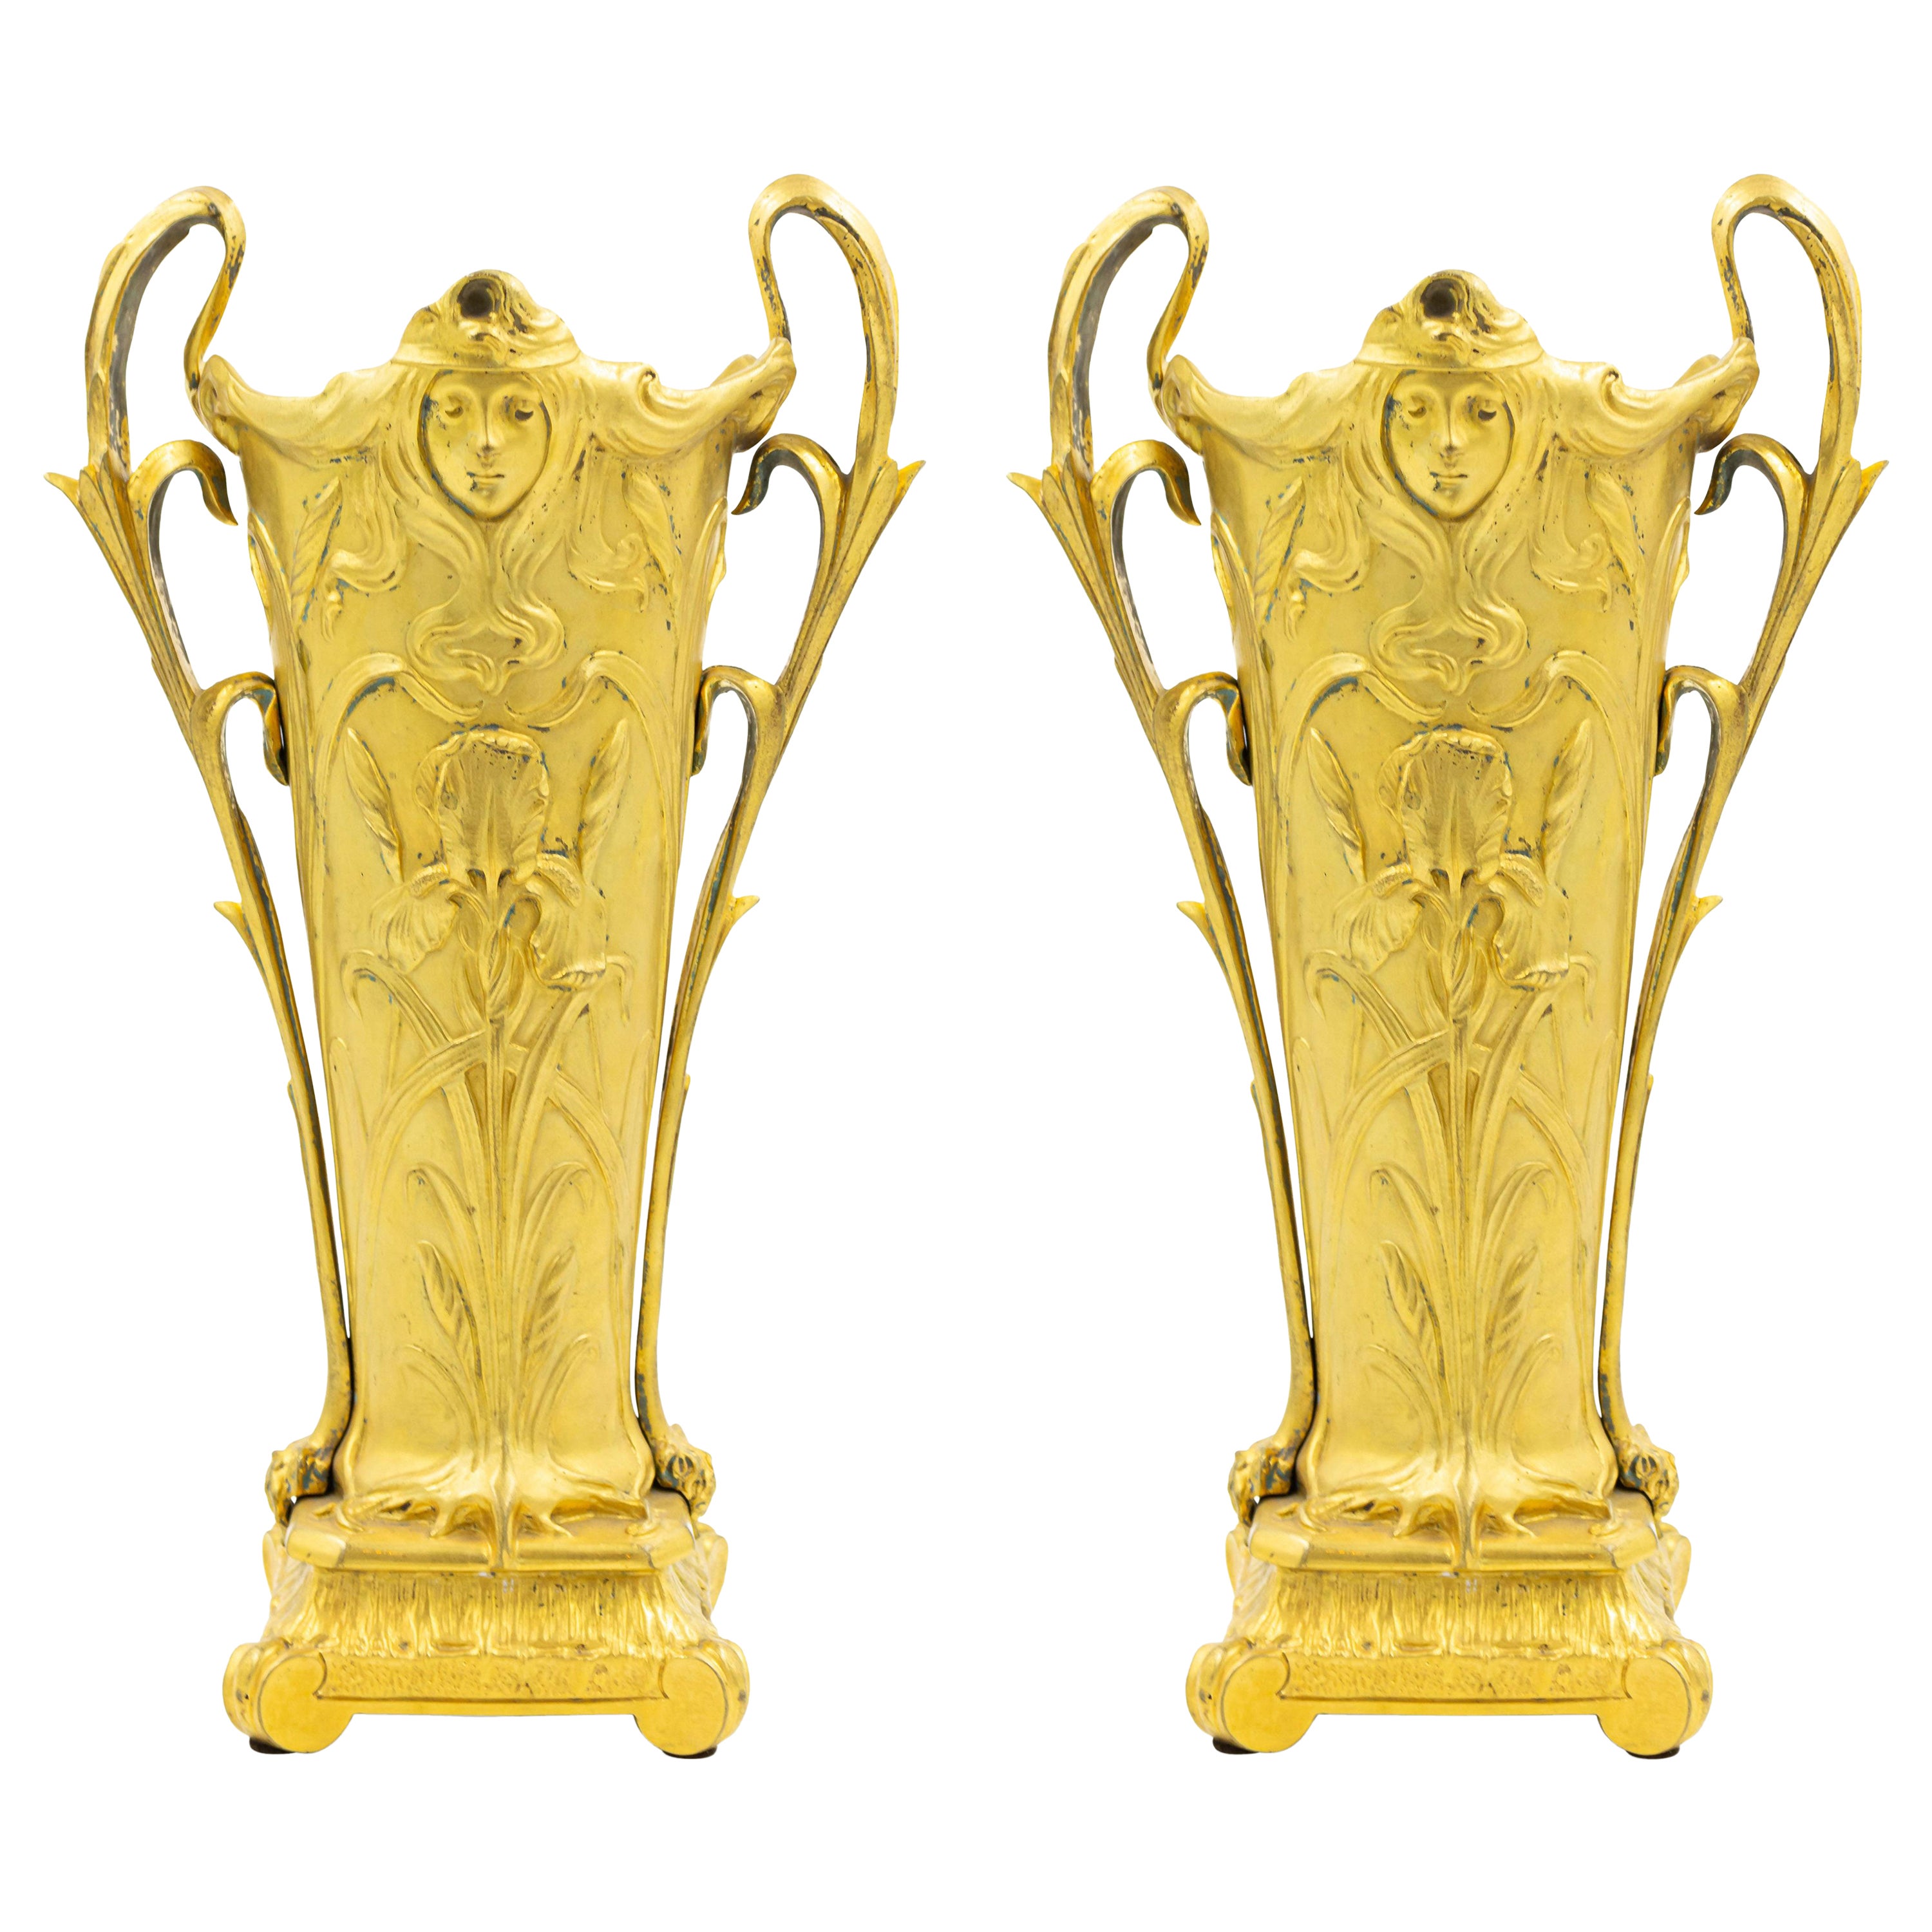 Paire de vases en bronze doré de style Art nouveau français